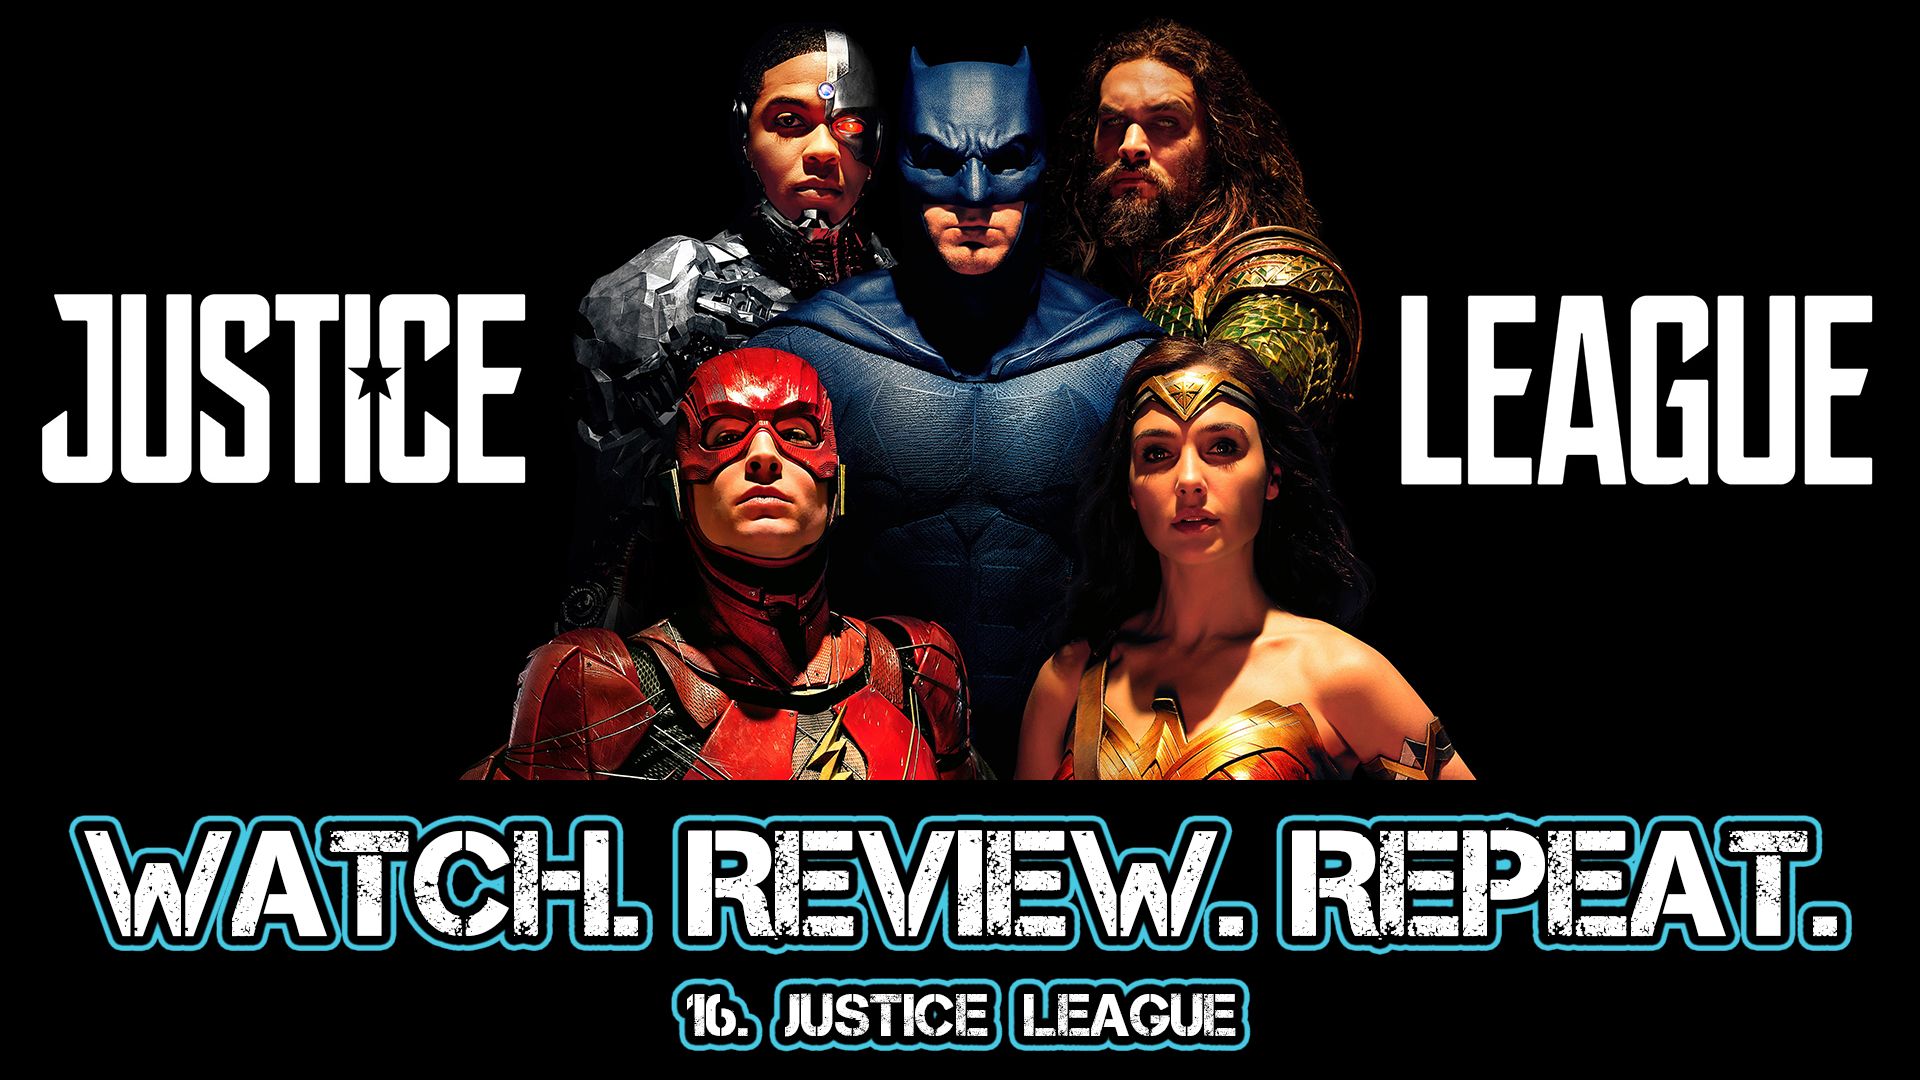 16. Justice League